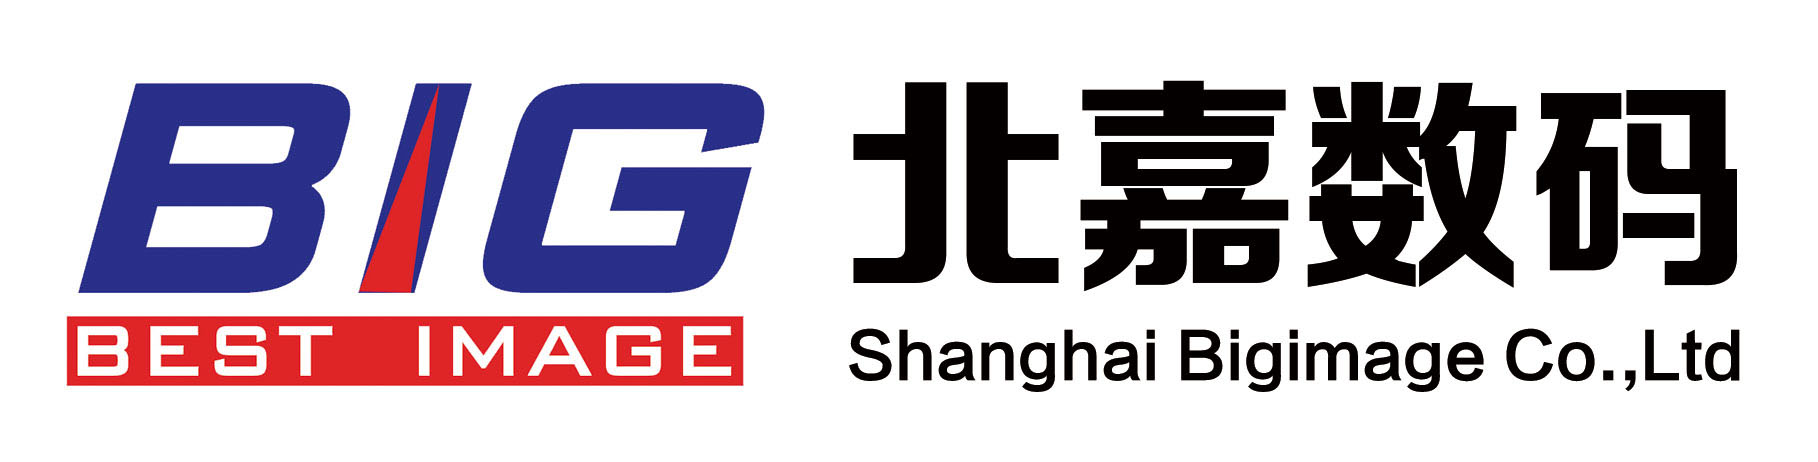 上海北嘉数码影像科技股份有限公司;